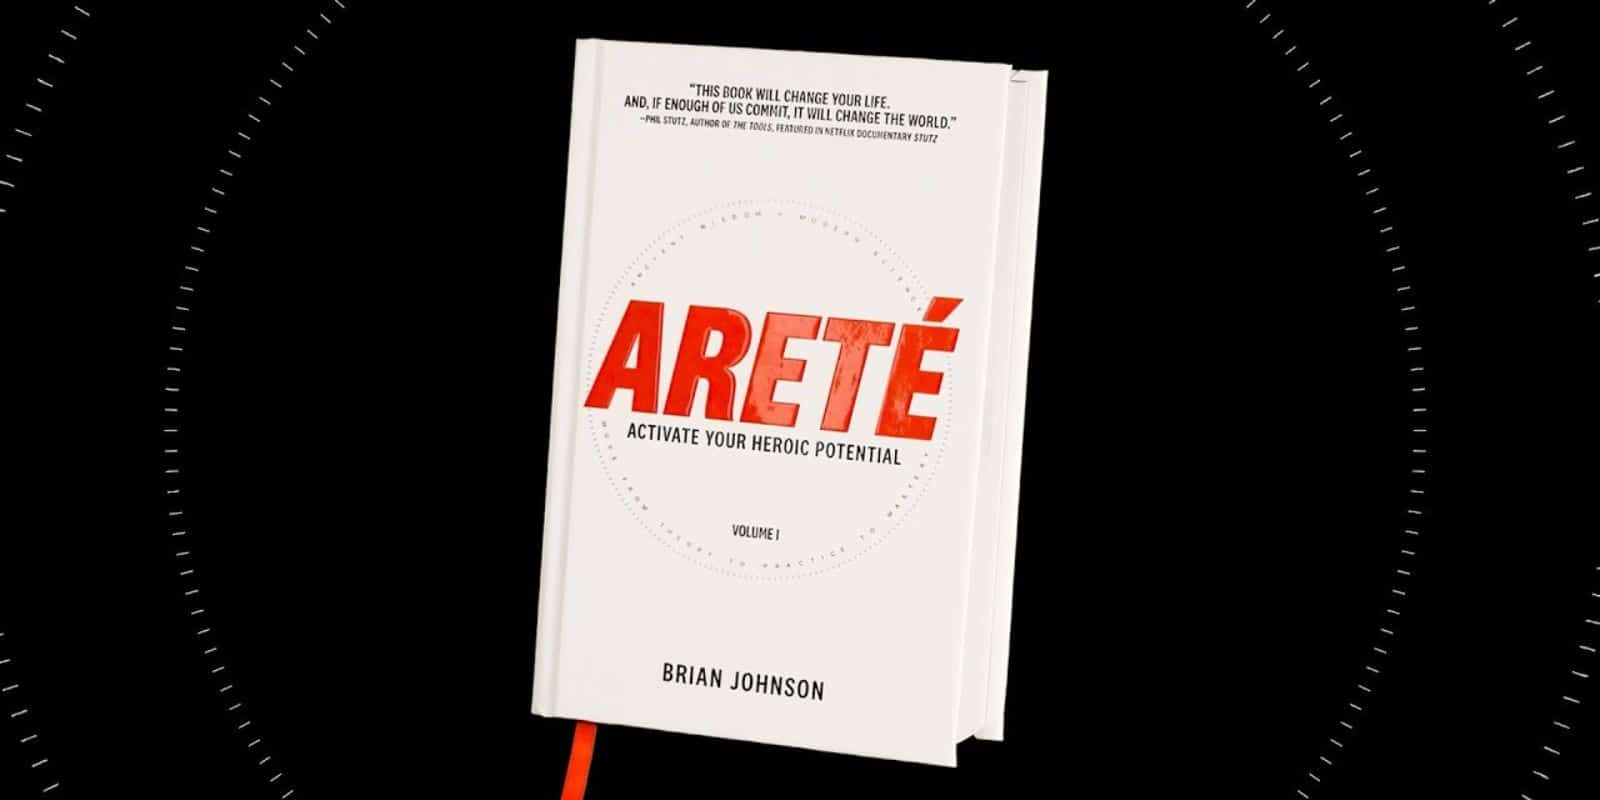 Arete book by Brian Johnson